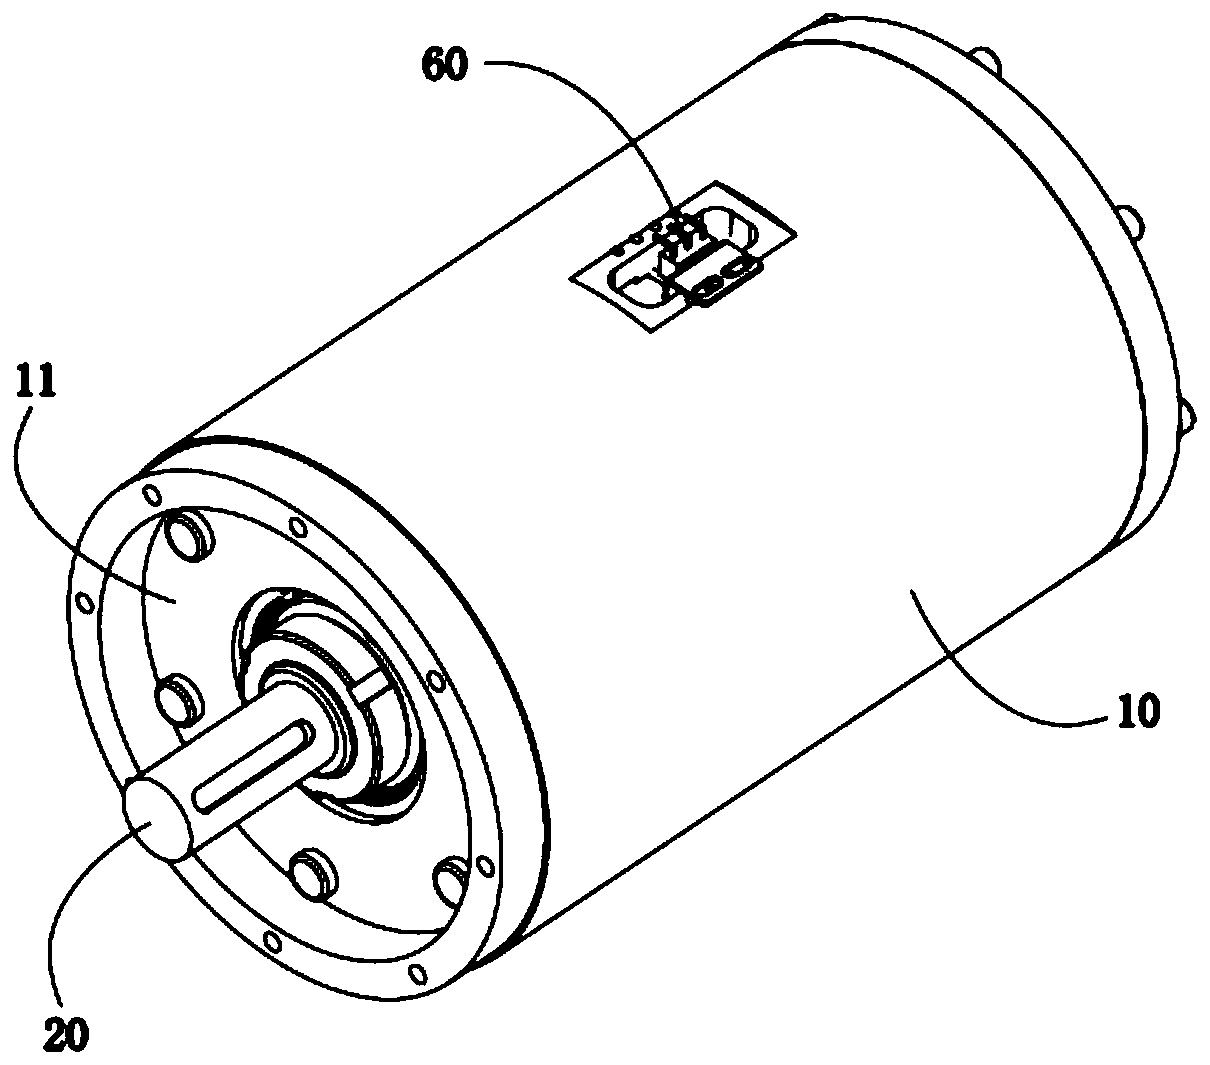 Progressive roller centrifugal brake